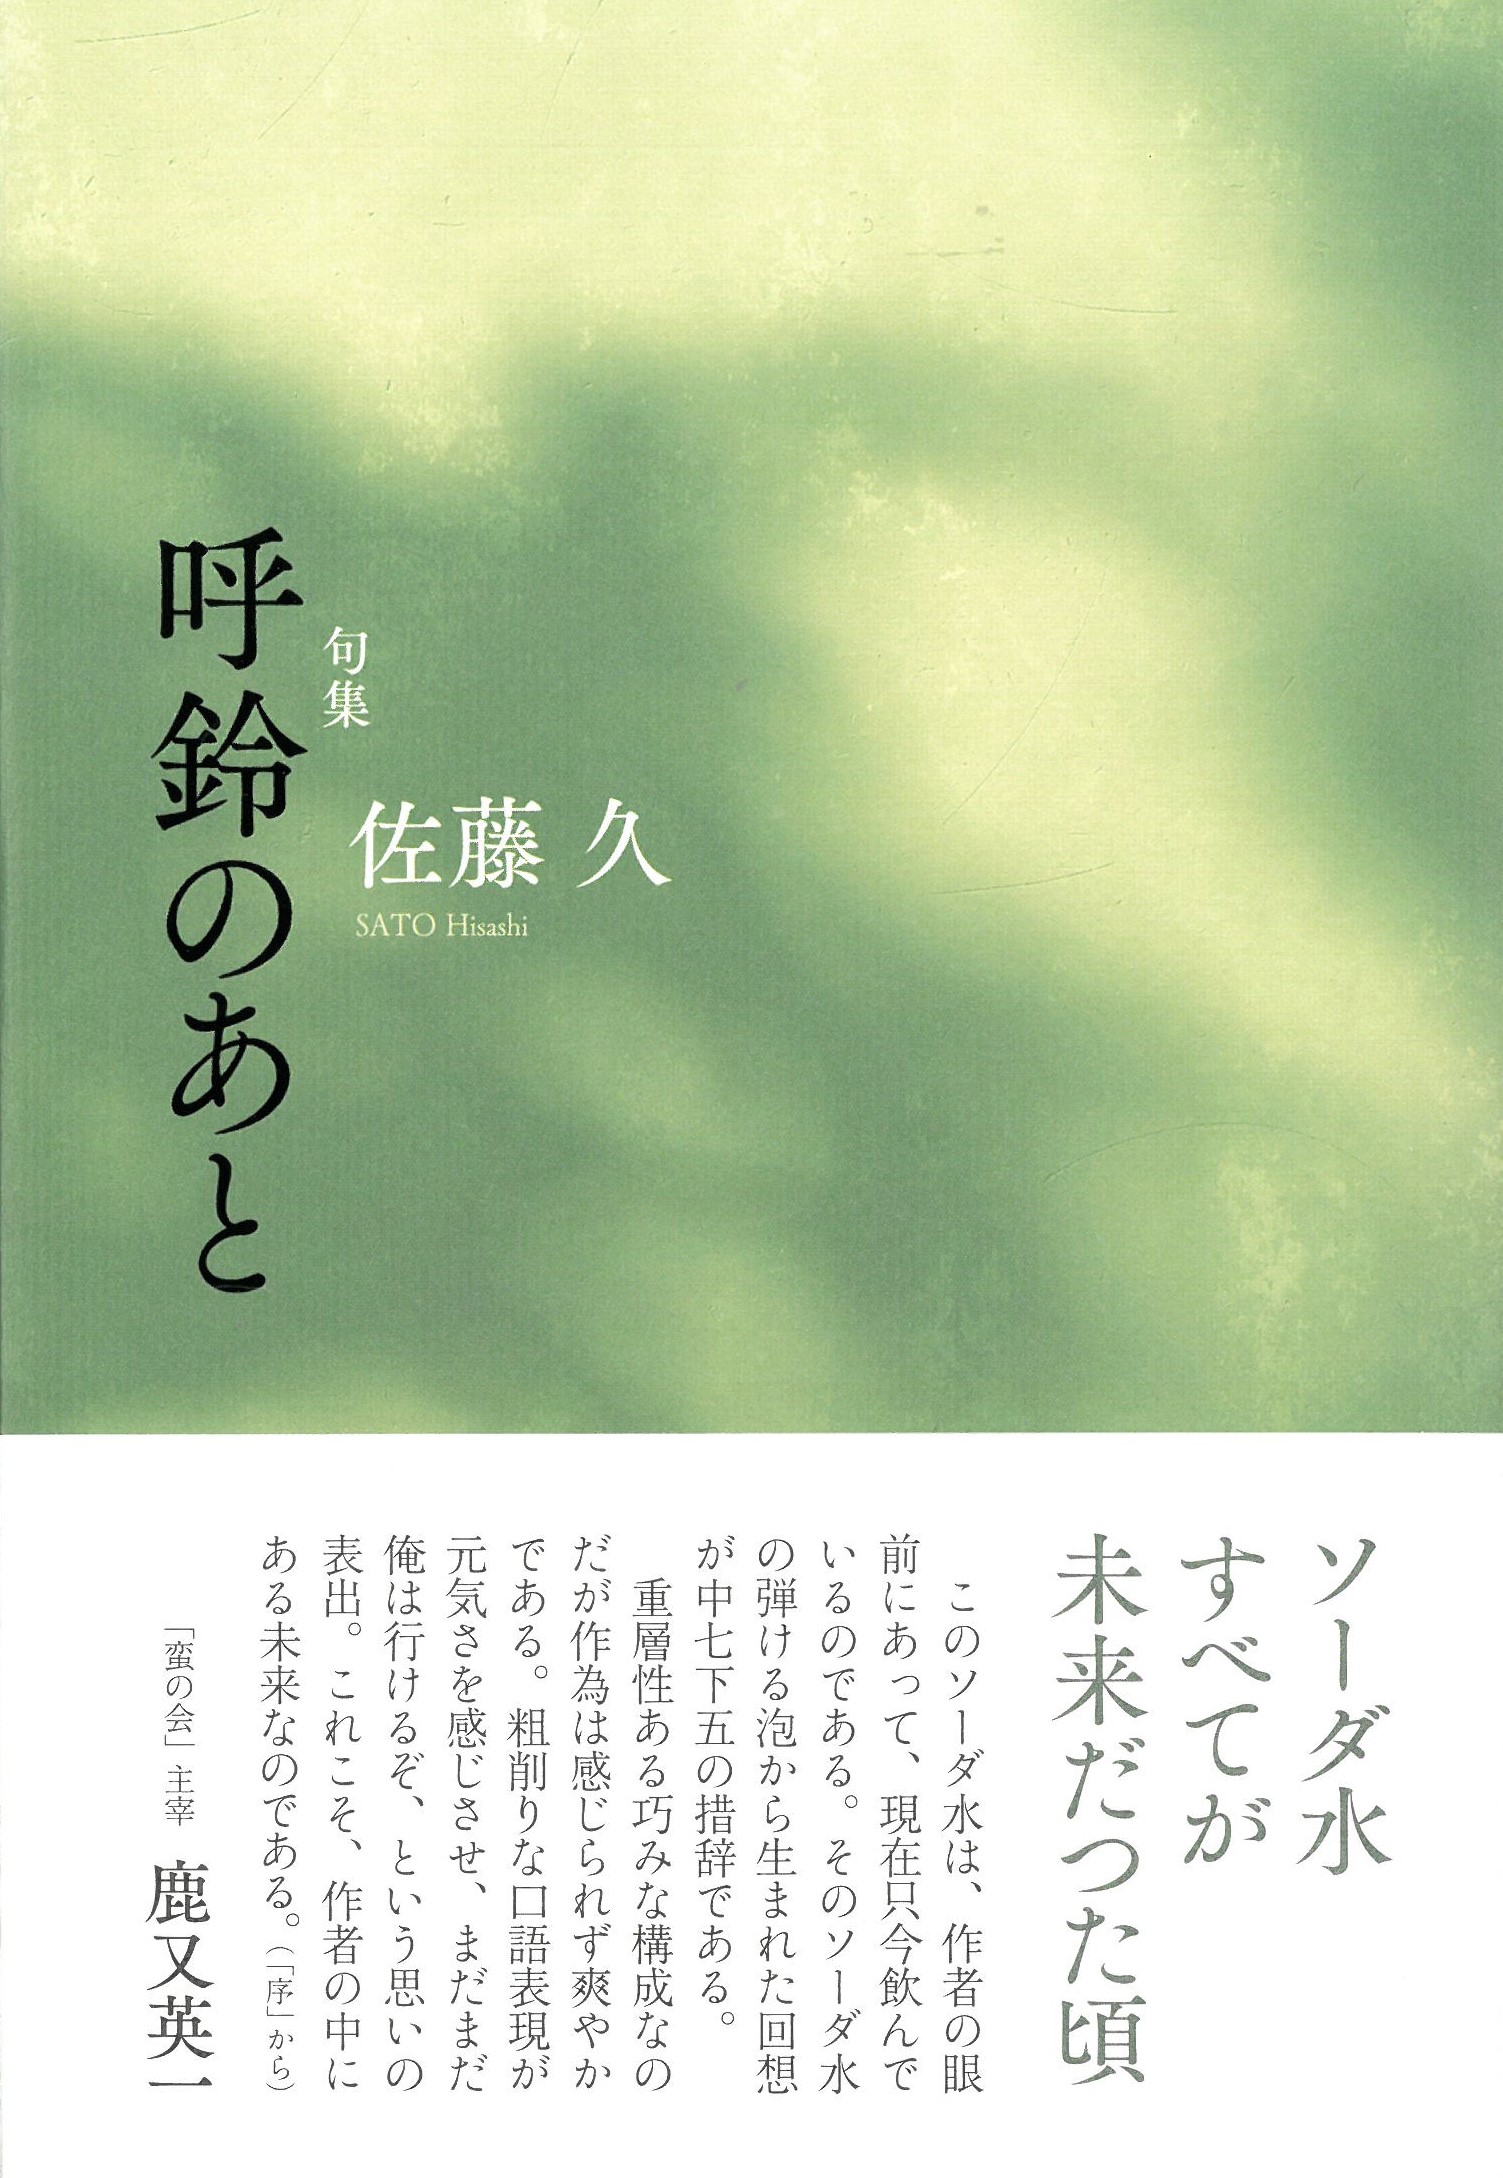 会員の本の販売 - 現代俳句協会